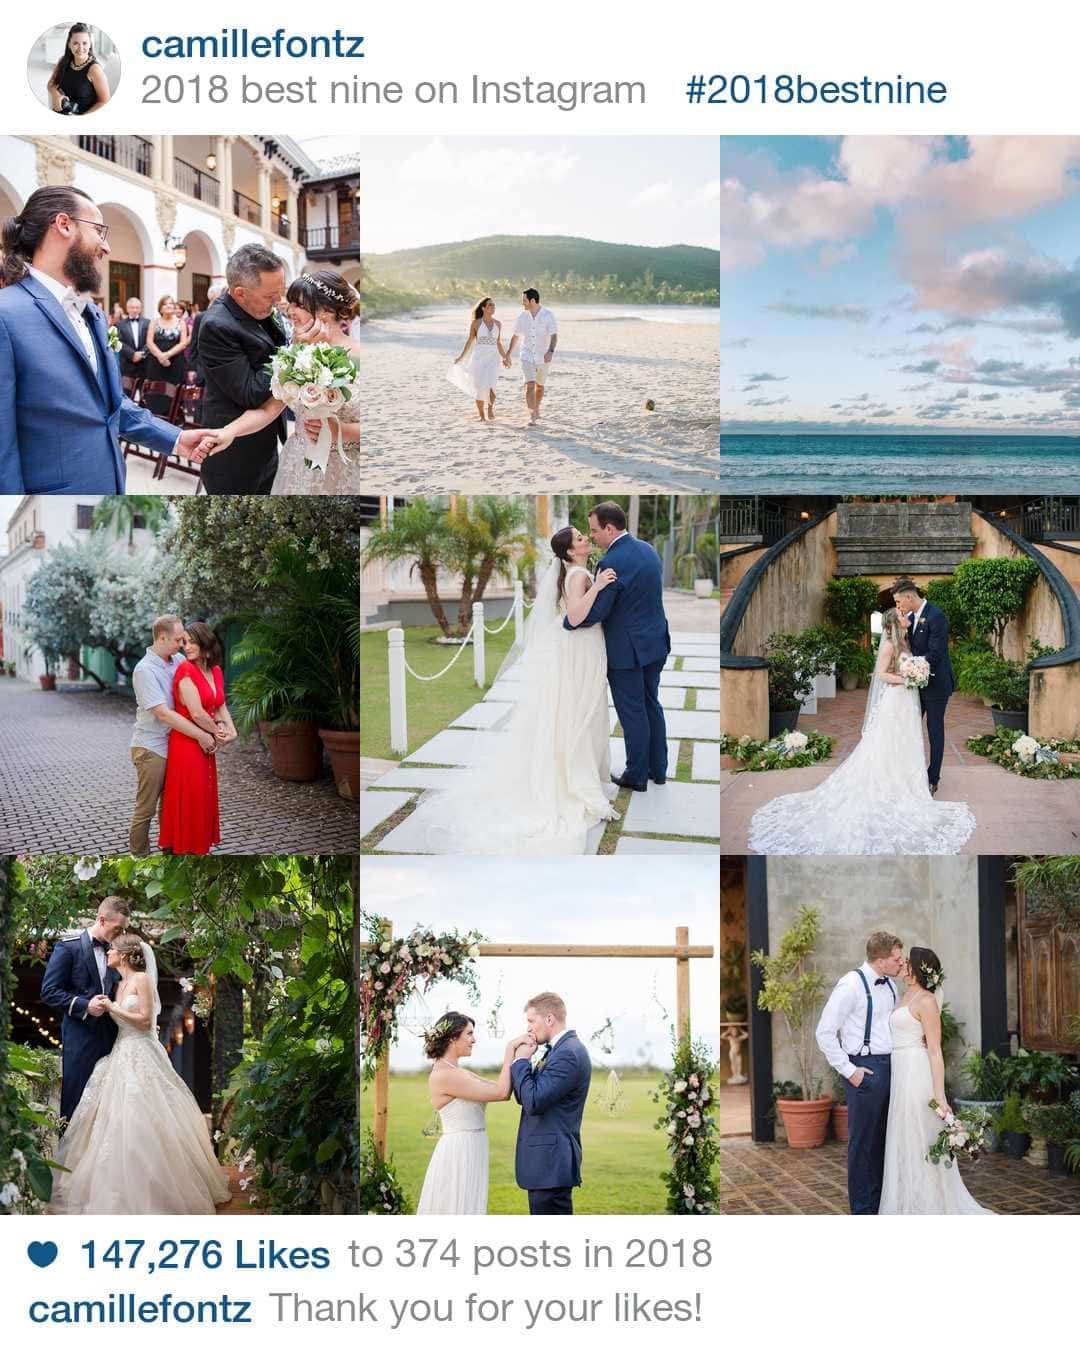 Camille Fontz Destination Wedding Photographer - Instagram Best Nine